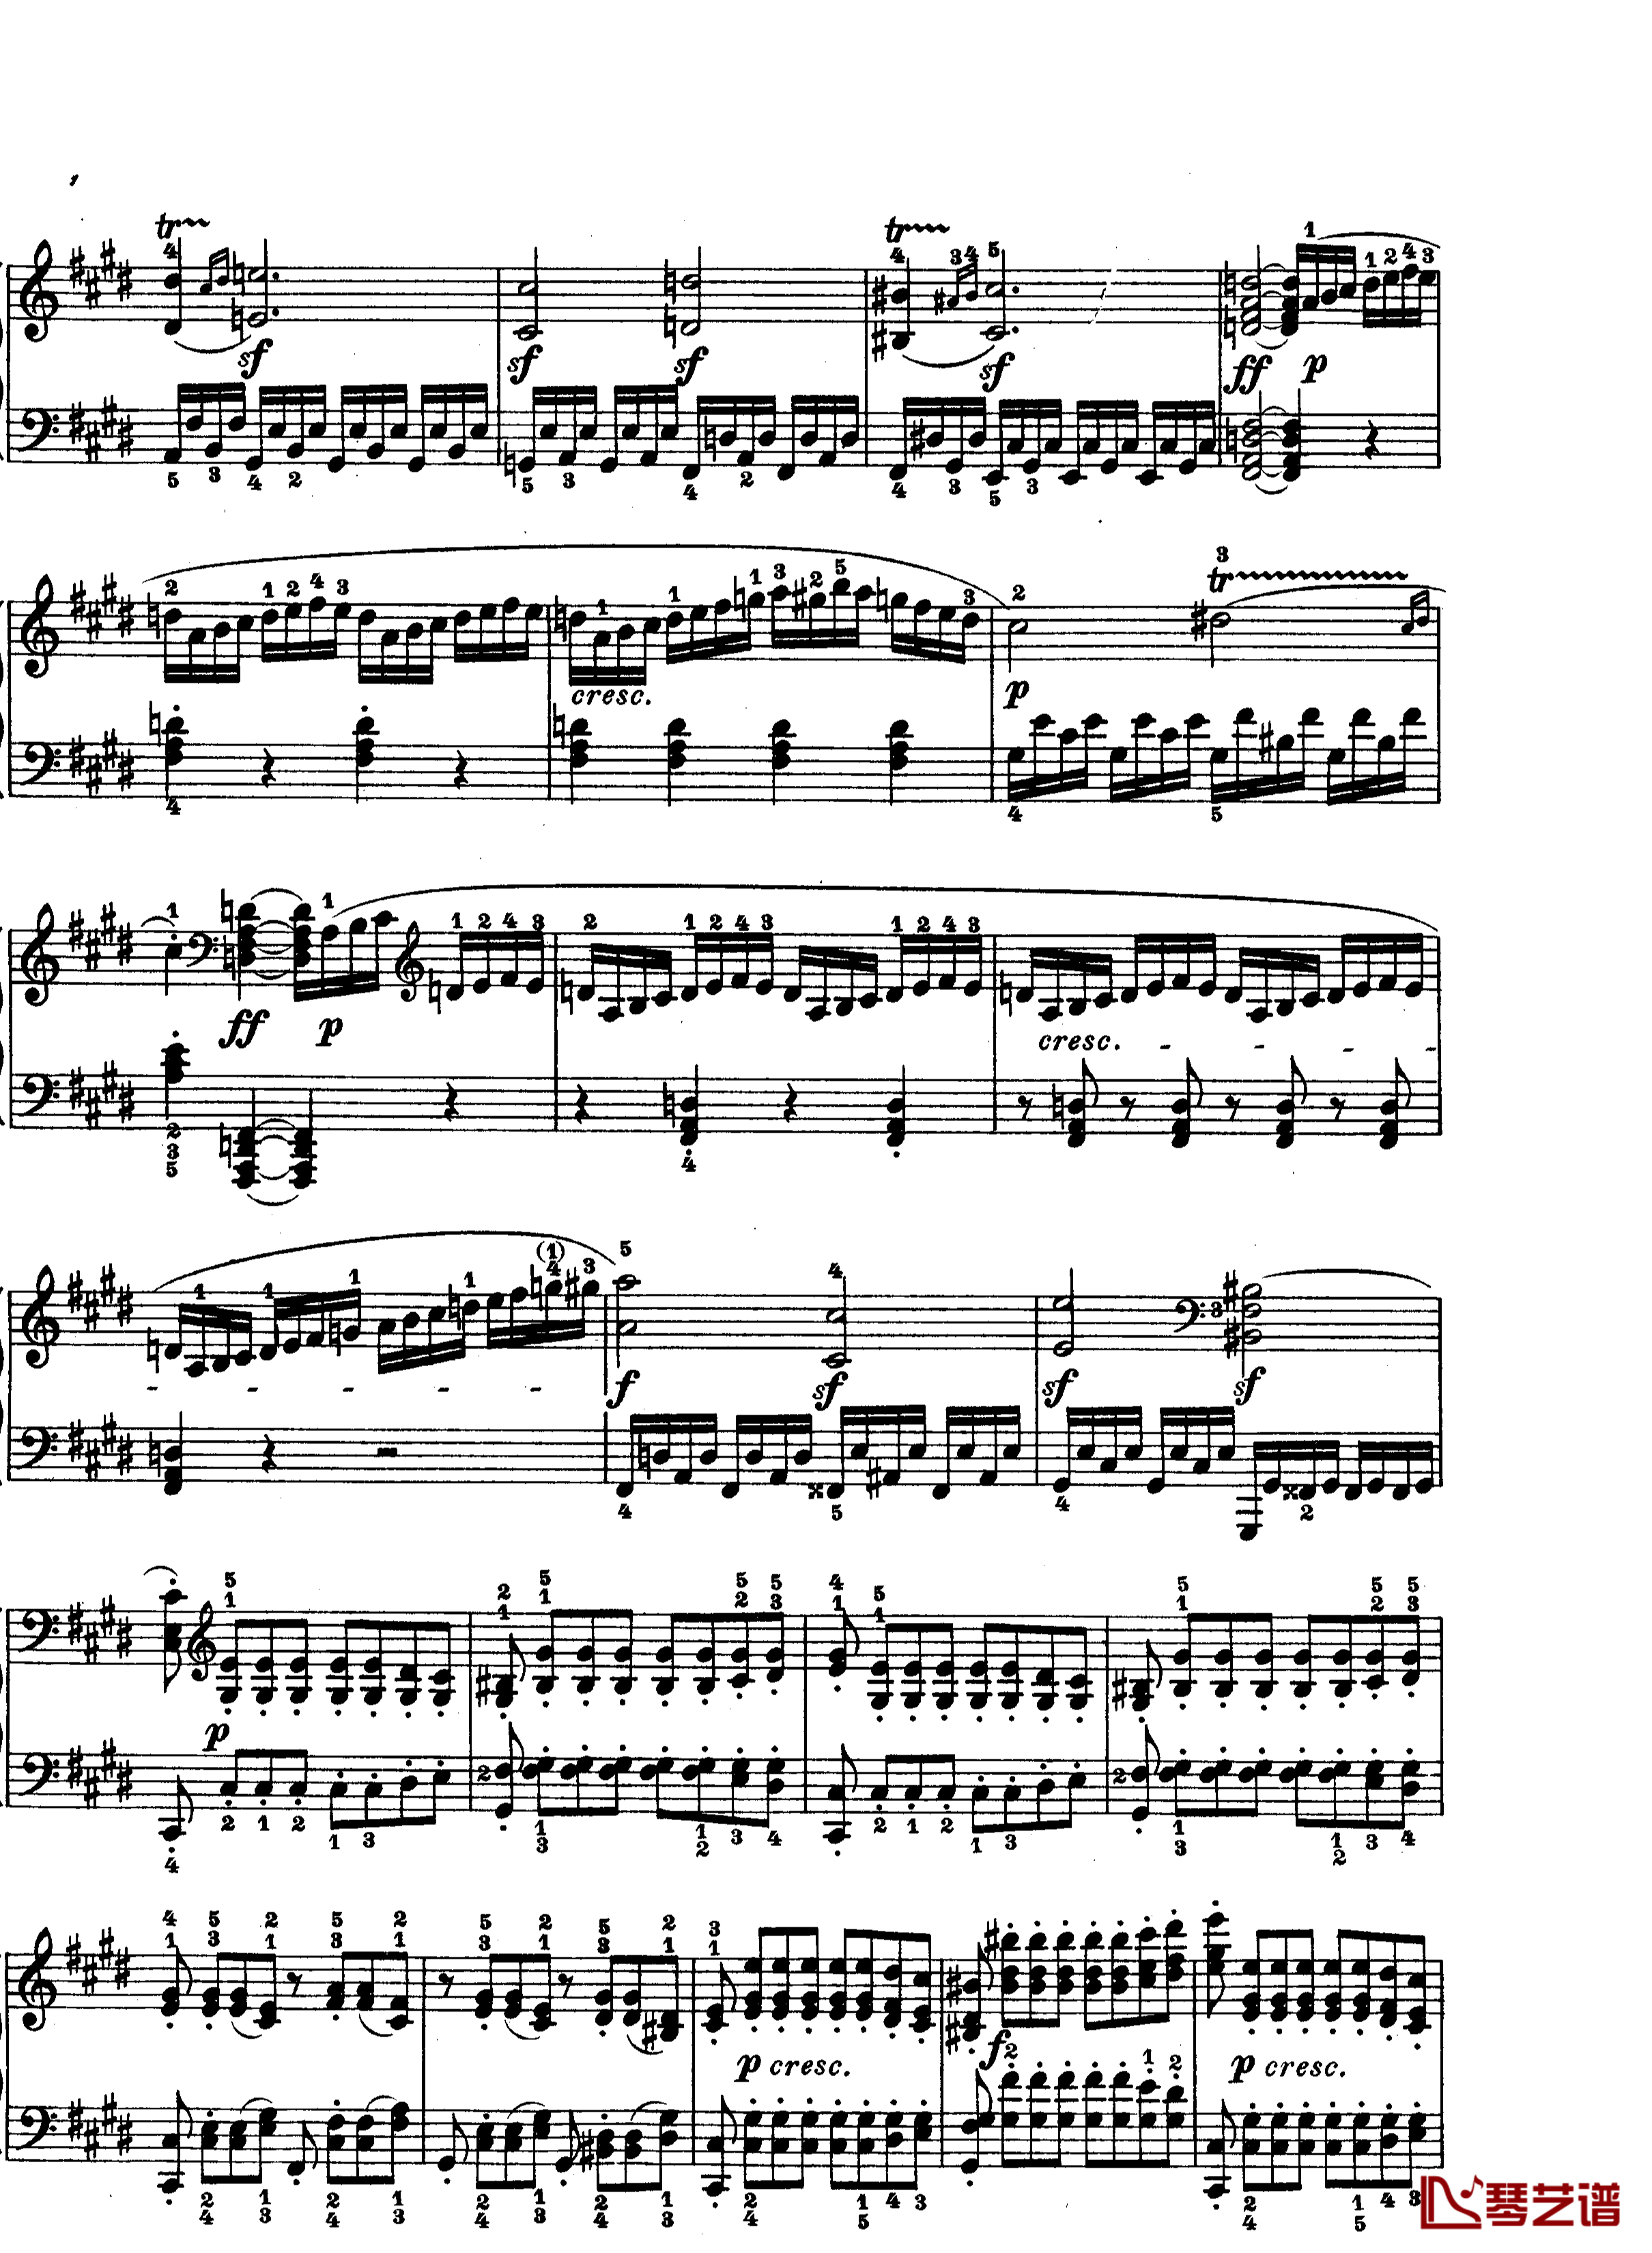 月光曲钢琴谱-第十四钢琴奏鸣曲-Op.27 No.2-贝多芬-beethoven11